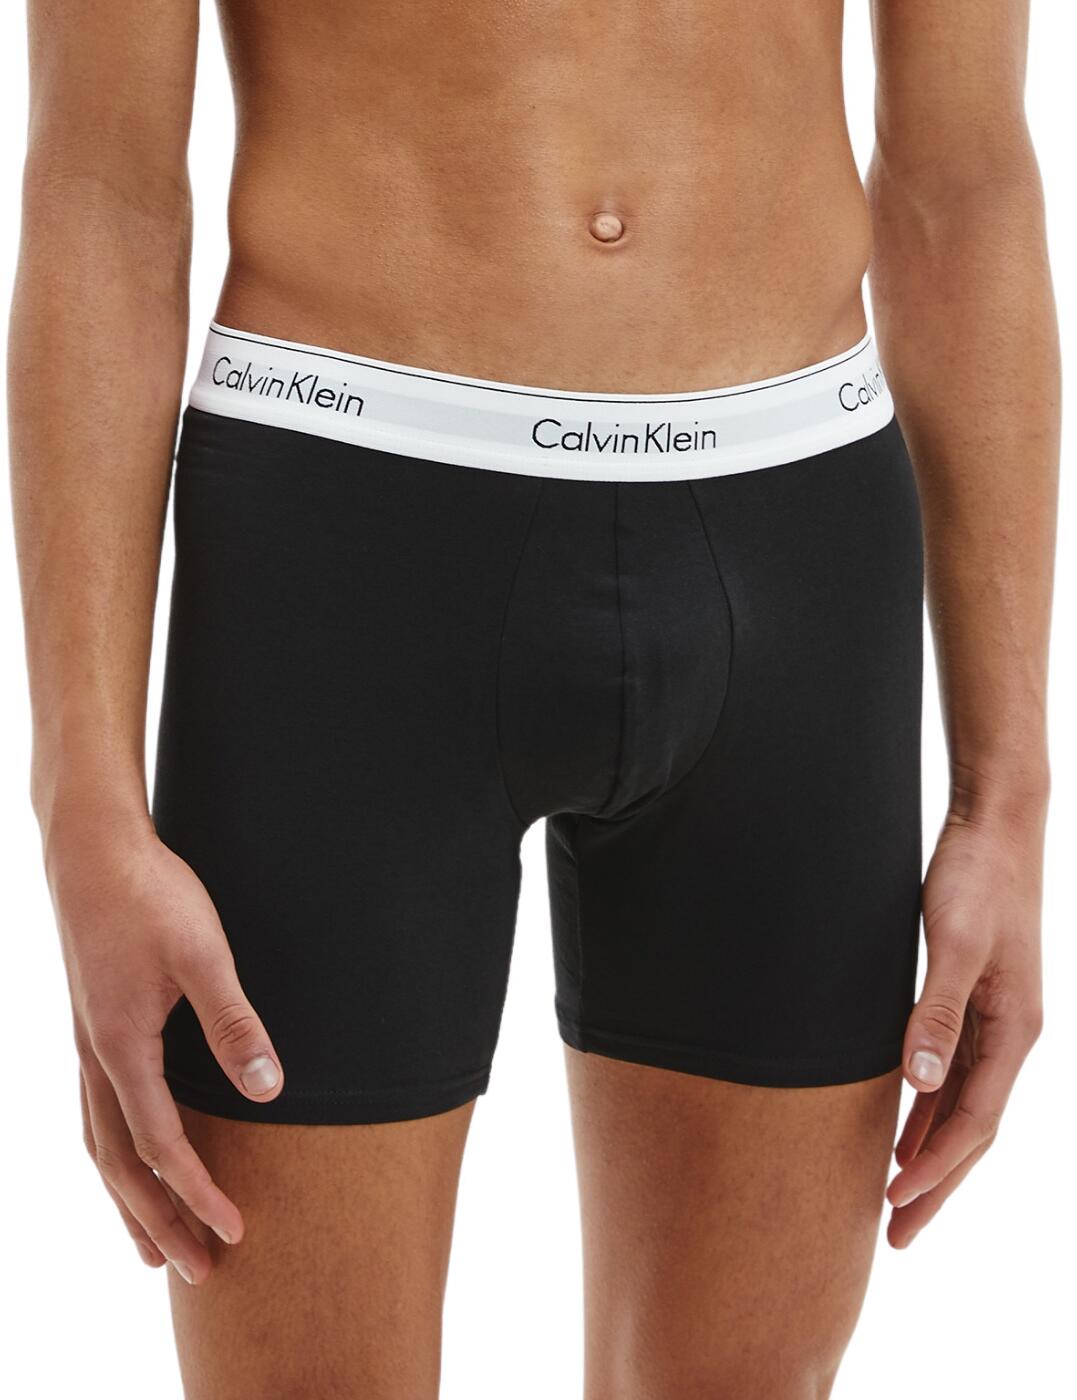 Calvin Klein Mens Modern Cotton Boxer Briefs 2 Pack Black